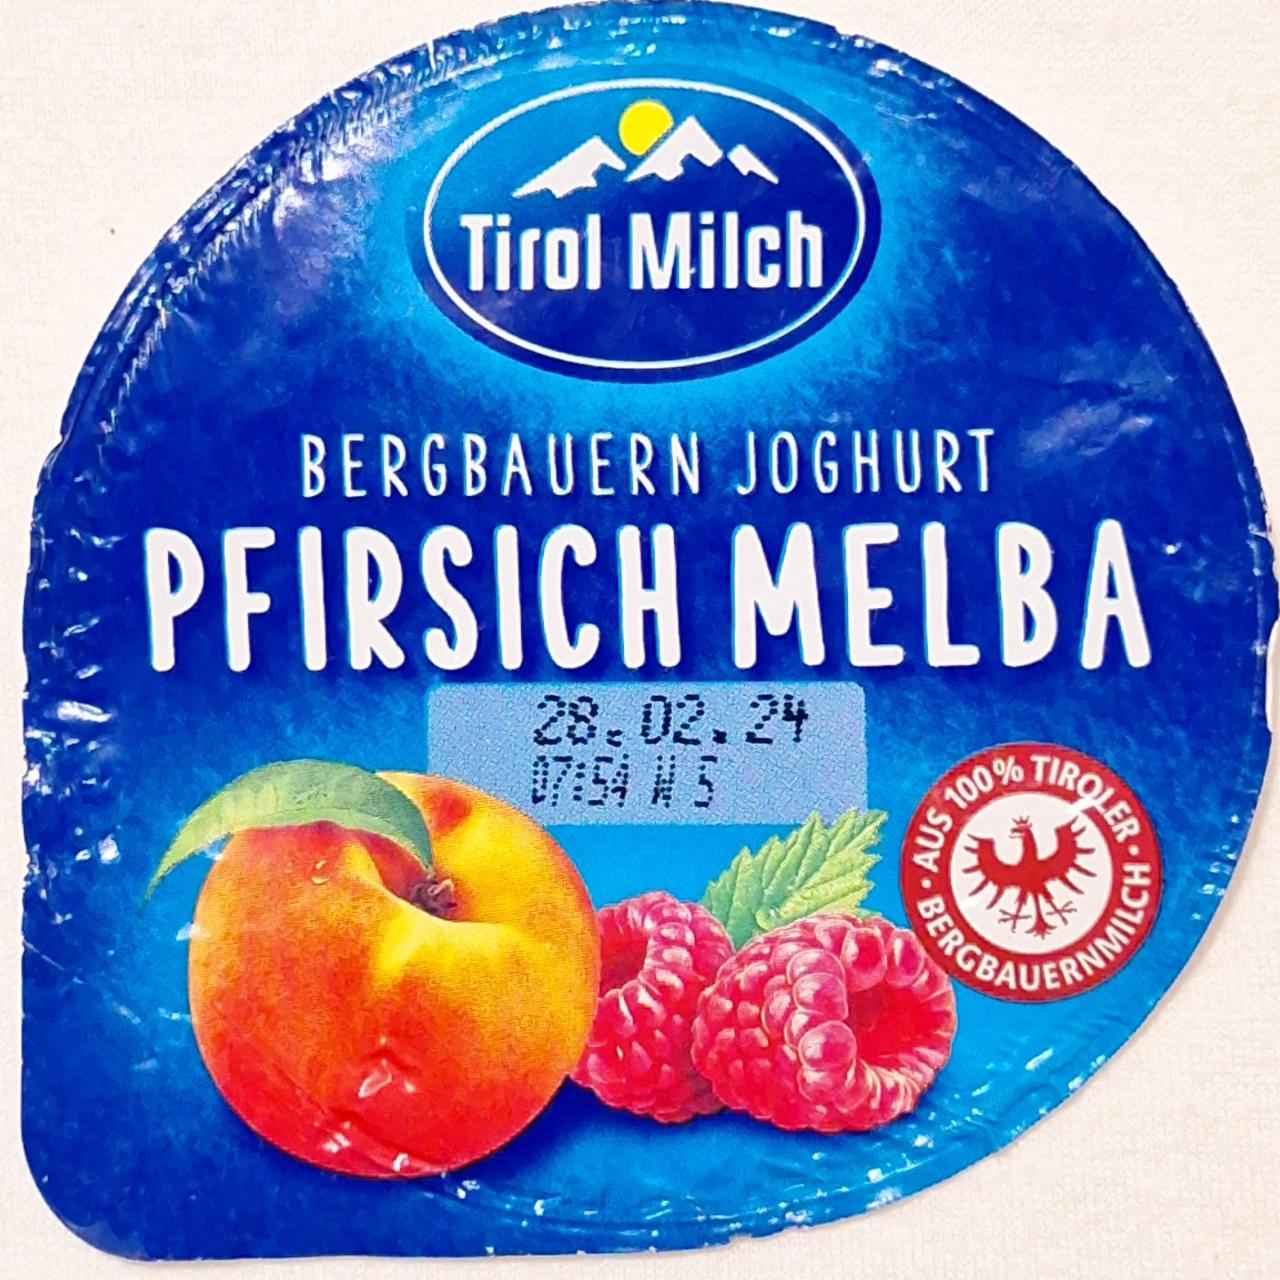 Fotografie - Bergbauern Joghurt Pfirsich Melba Tirol Milch